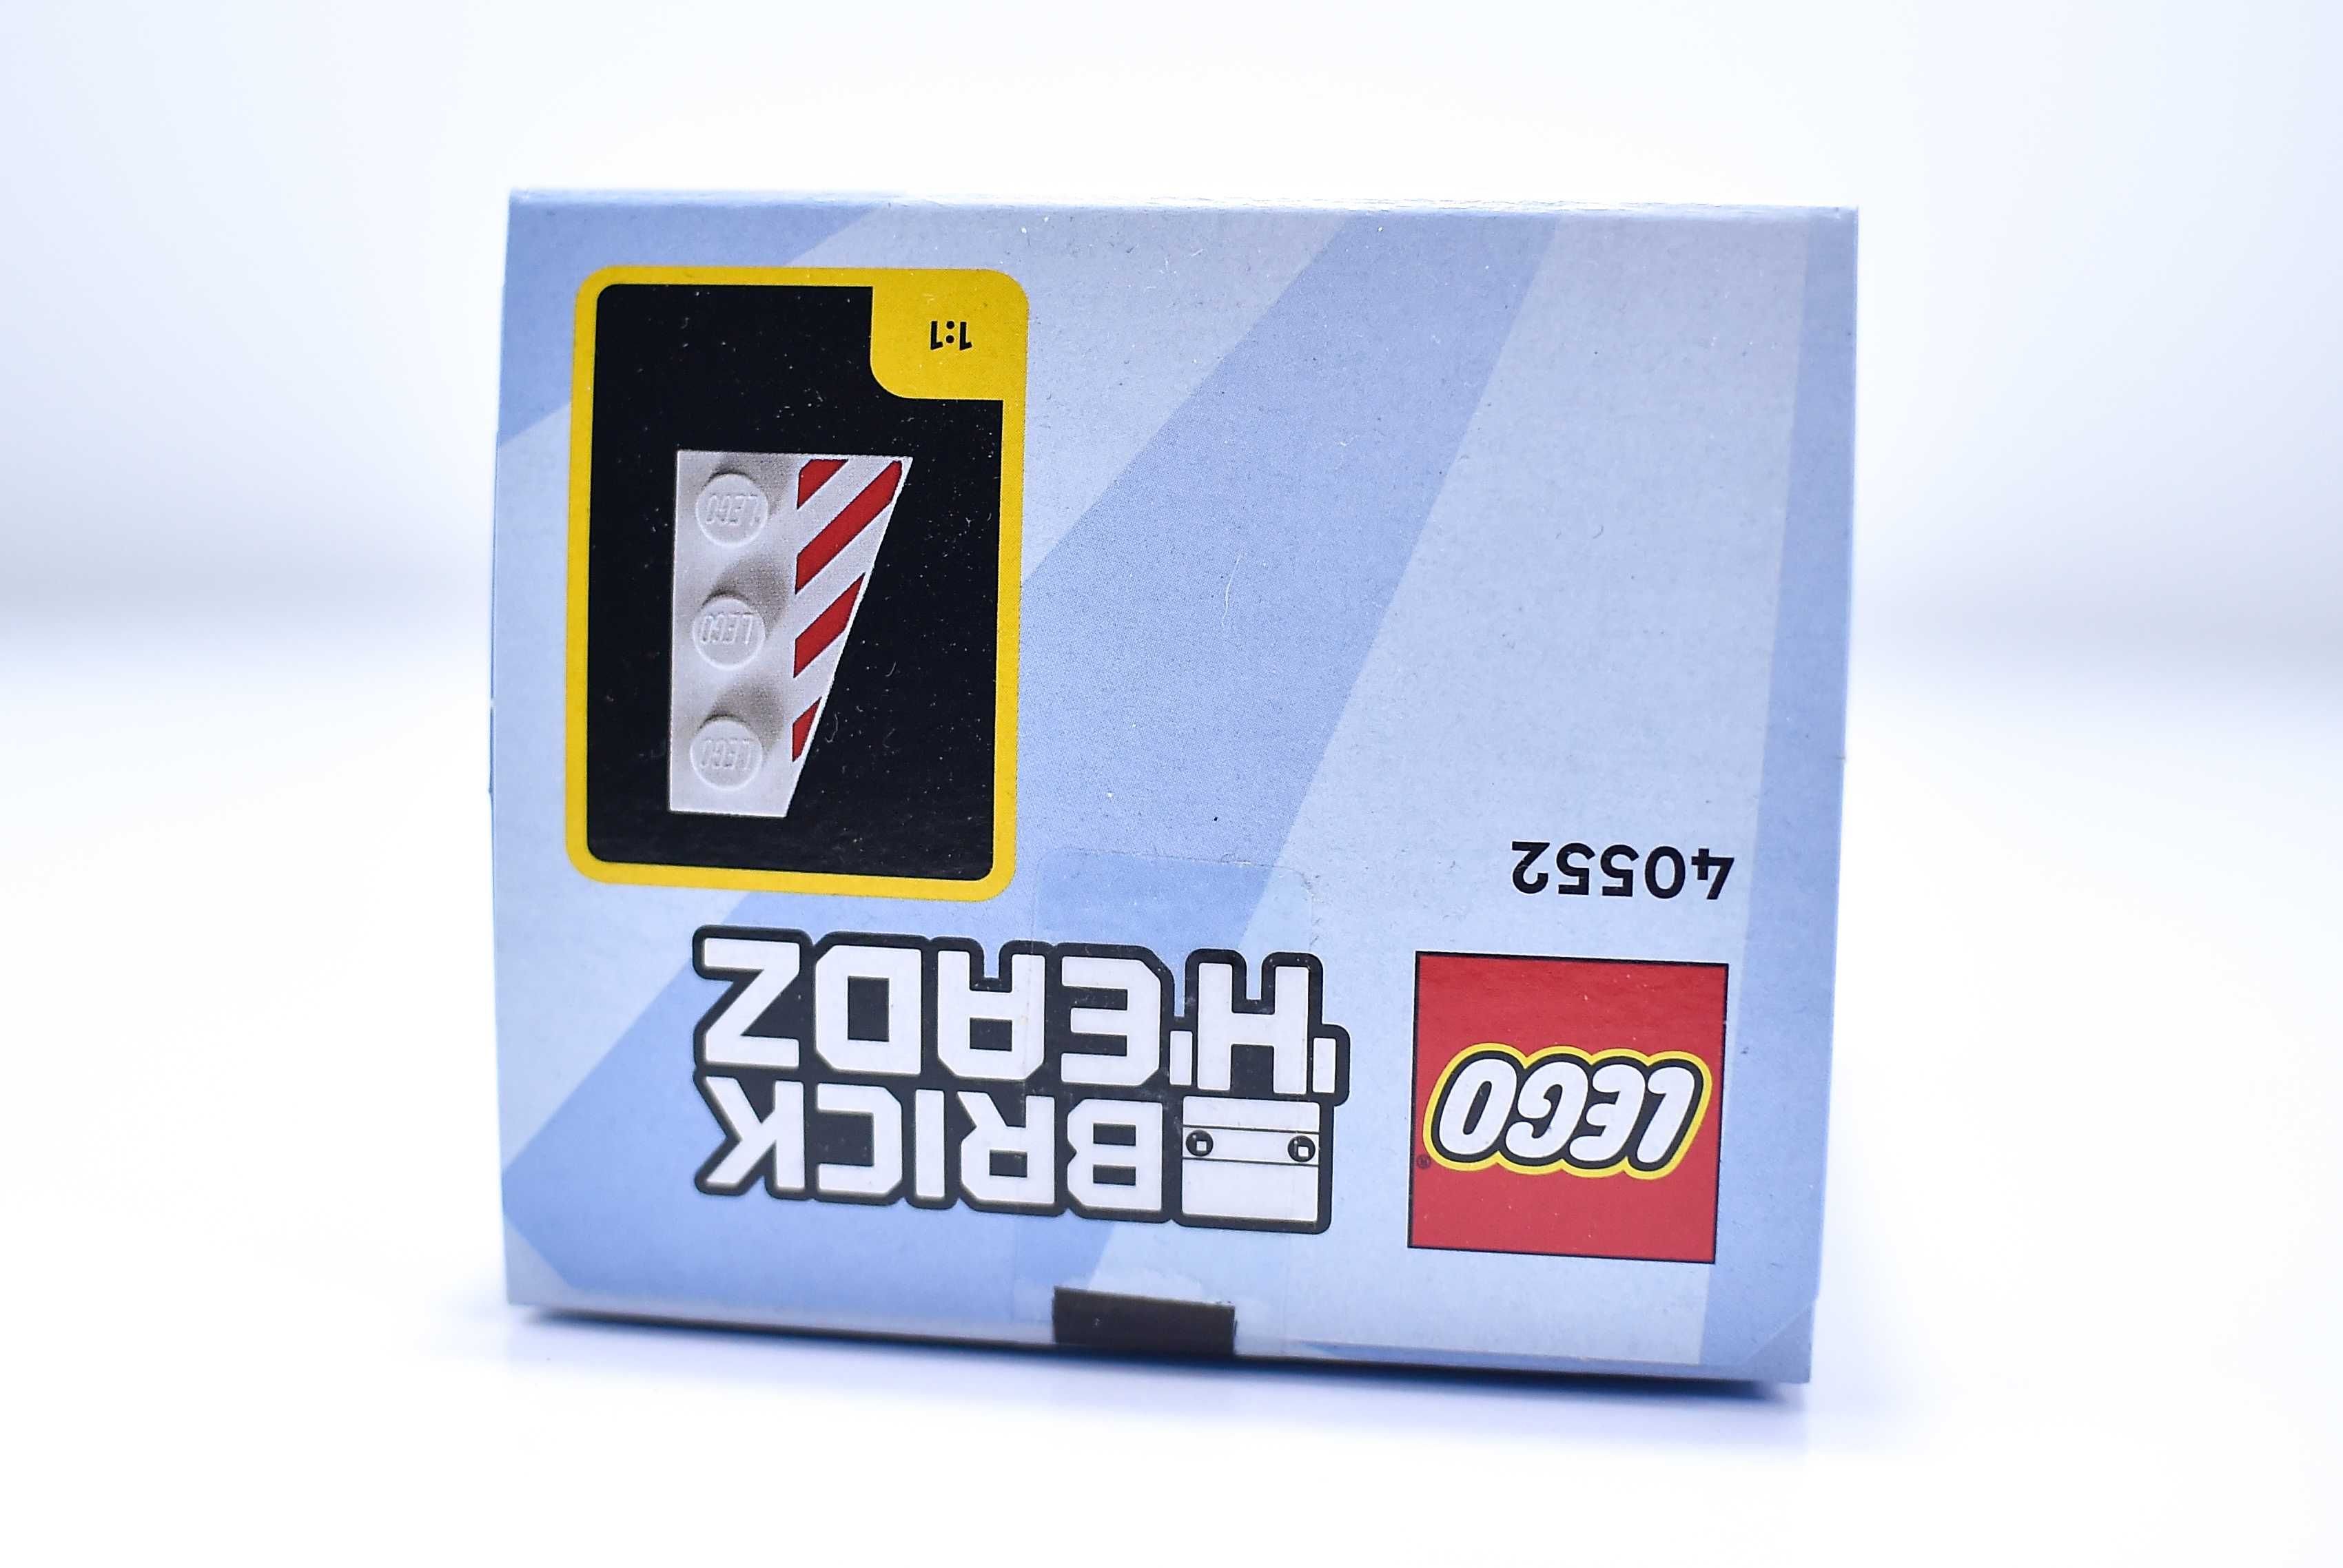 LEGO BrickHeadz 40552 Buzz Lightyear